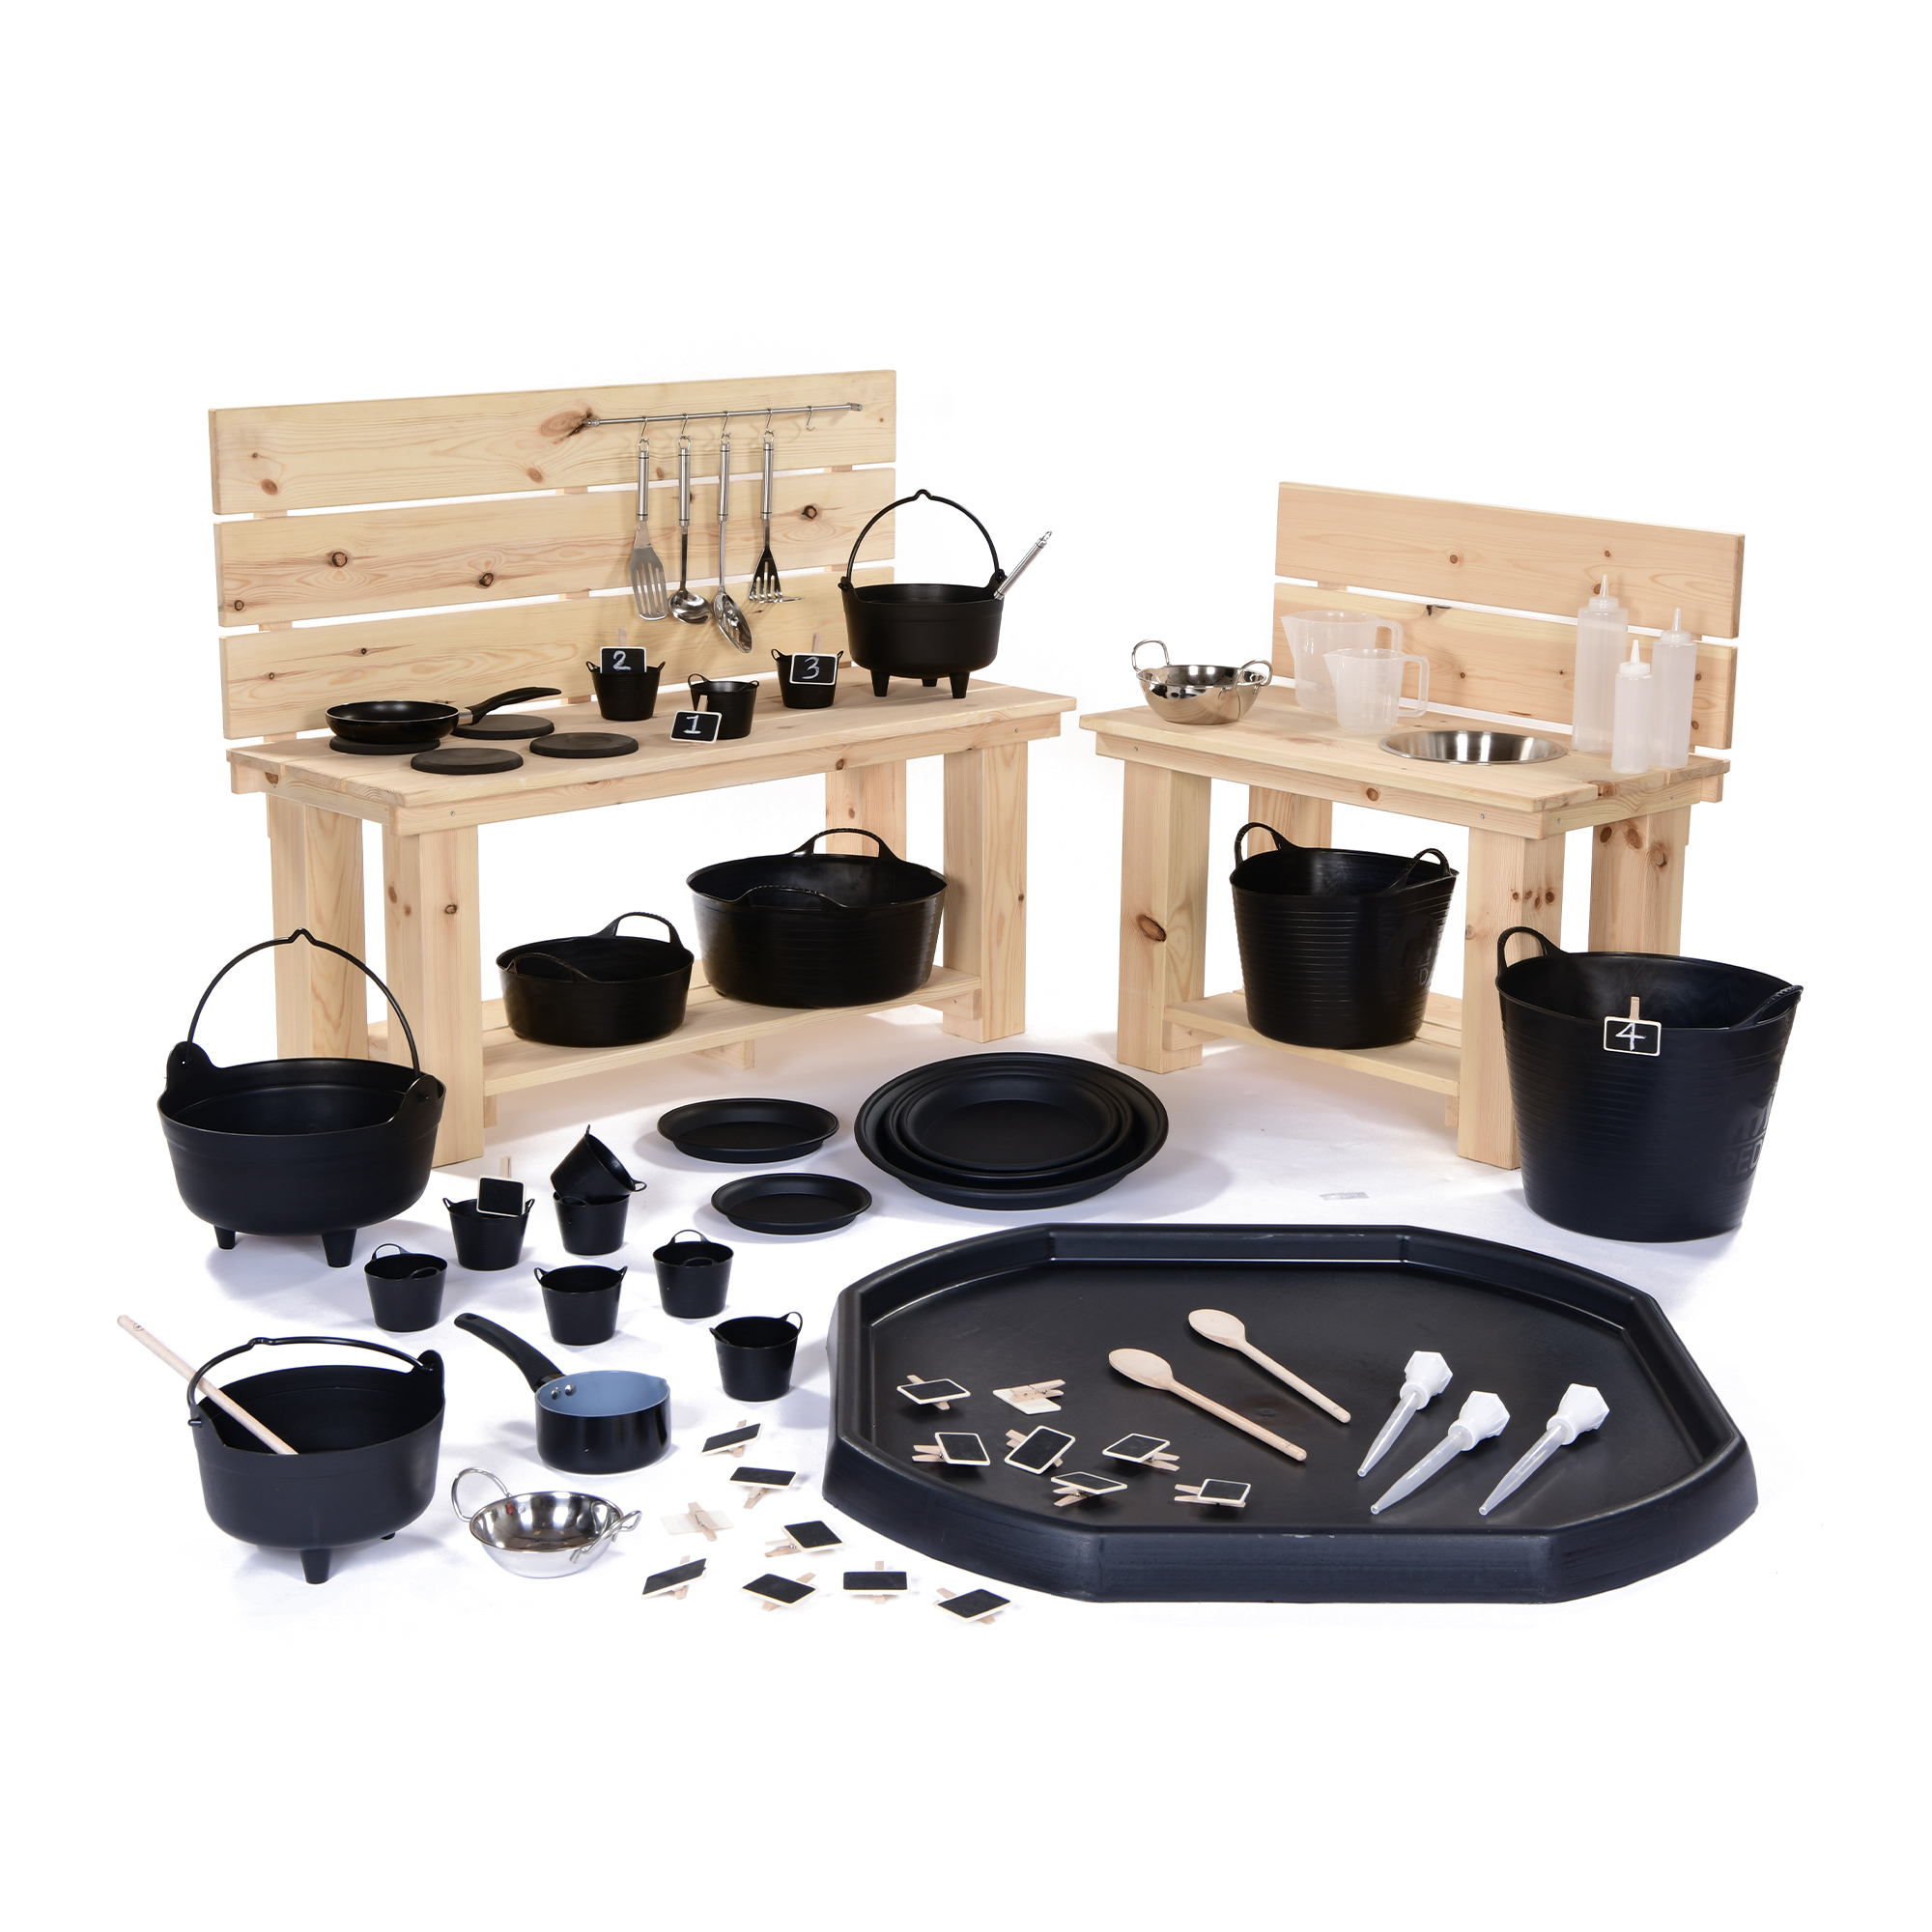 Mud Kitchen Accessories Kit